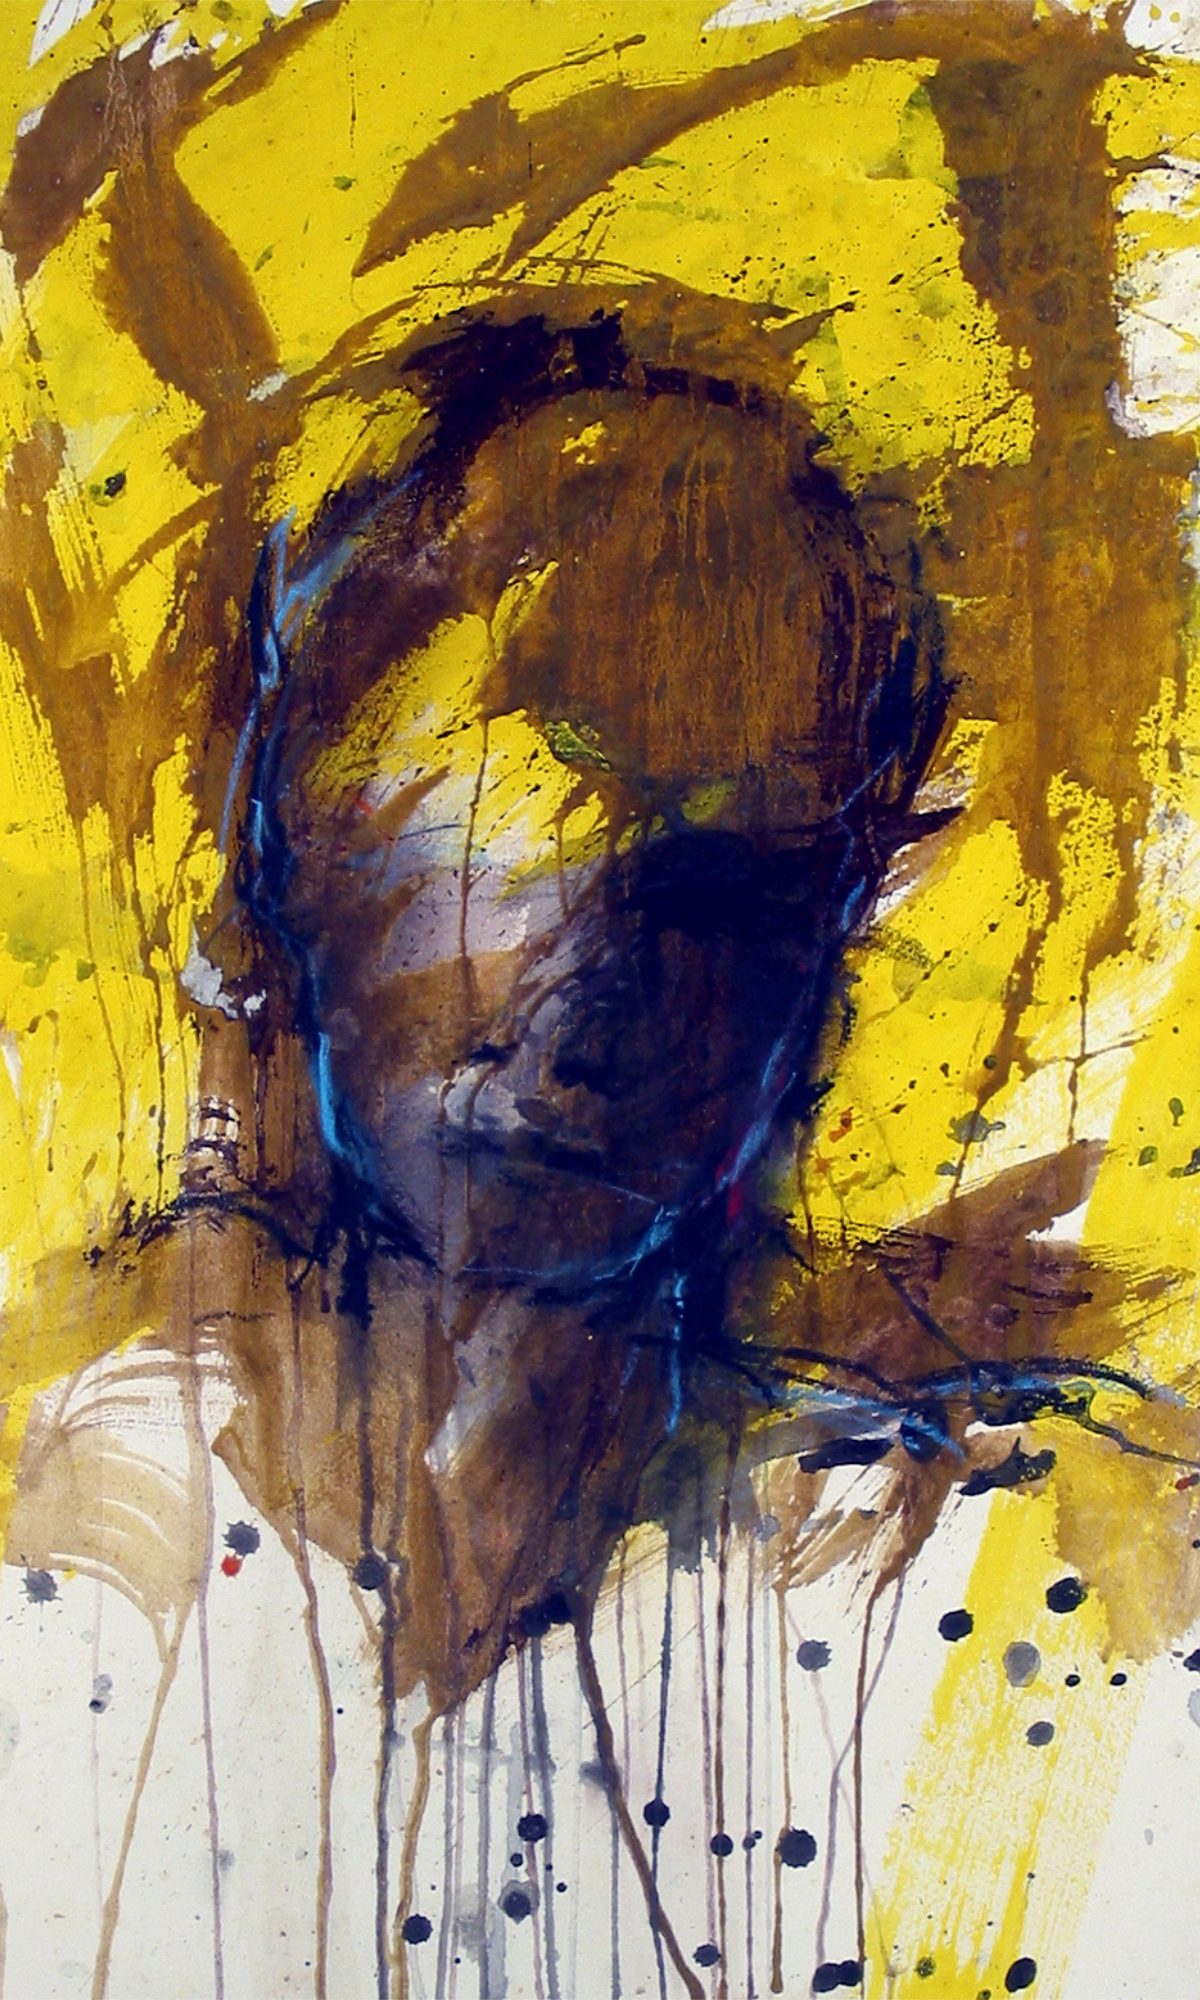 Manfredf-Fischer-Malerei-2002 Brauner Kopf mit etwas Türkis, Malerei auf Papier, 80 x 52 cm